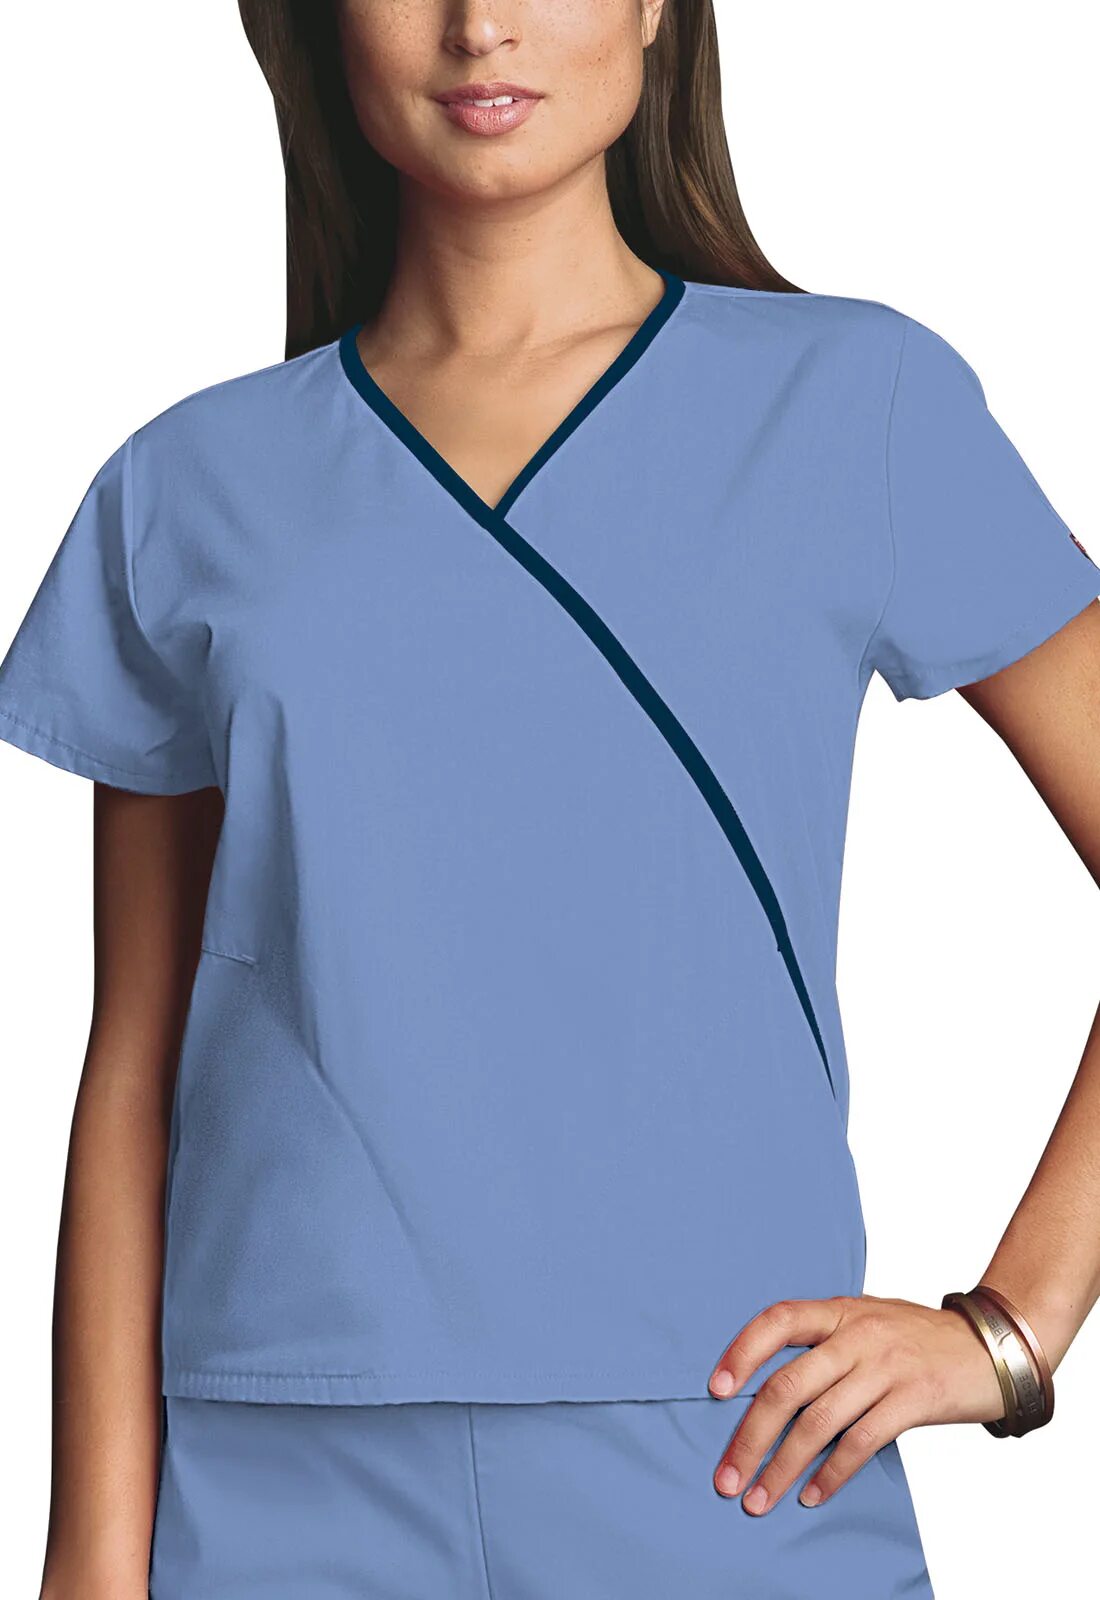 Медицинская блуза с застежкой на плече. Mini Scrub. Блуза медицинская принт рентген кота. Платье медицинское женское игуана.